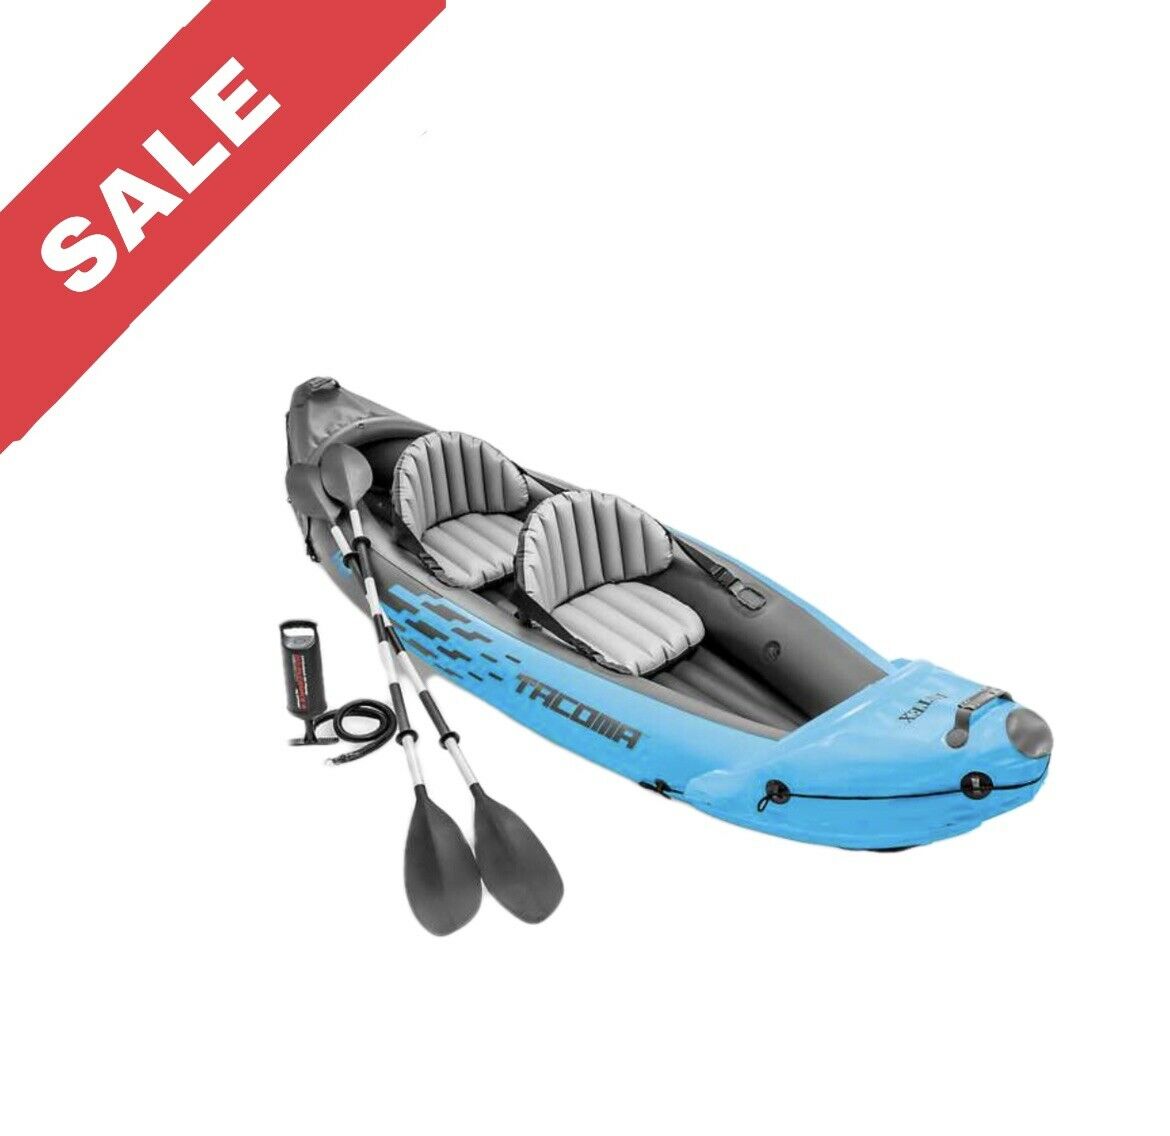 INTEX Inflatable Kayak Sport Explorer Series Tacoma K2 10 ft 3 In Lake River